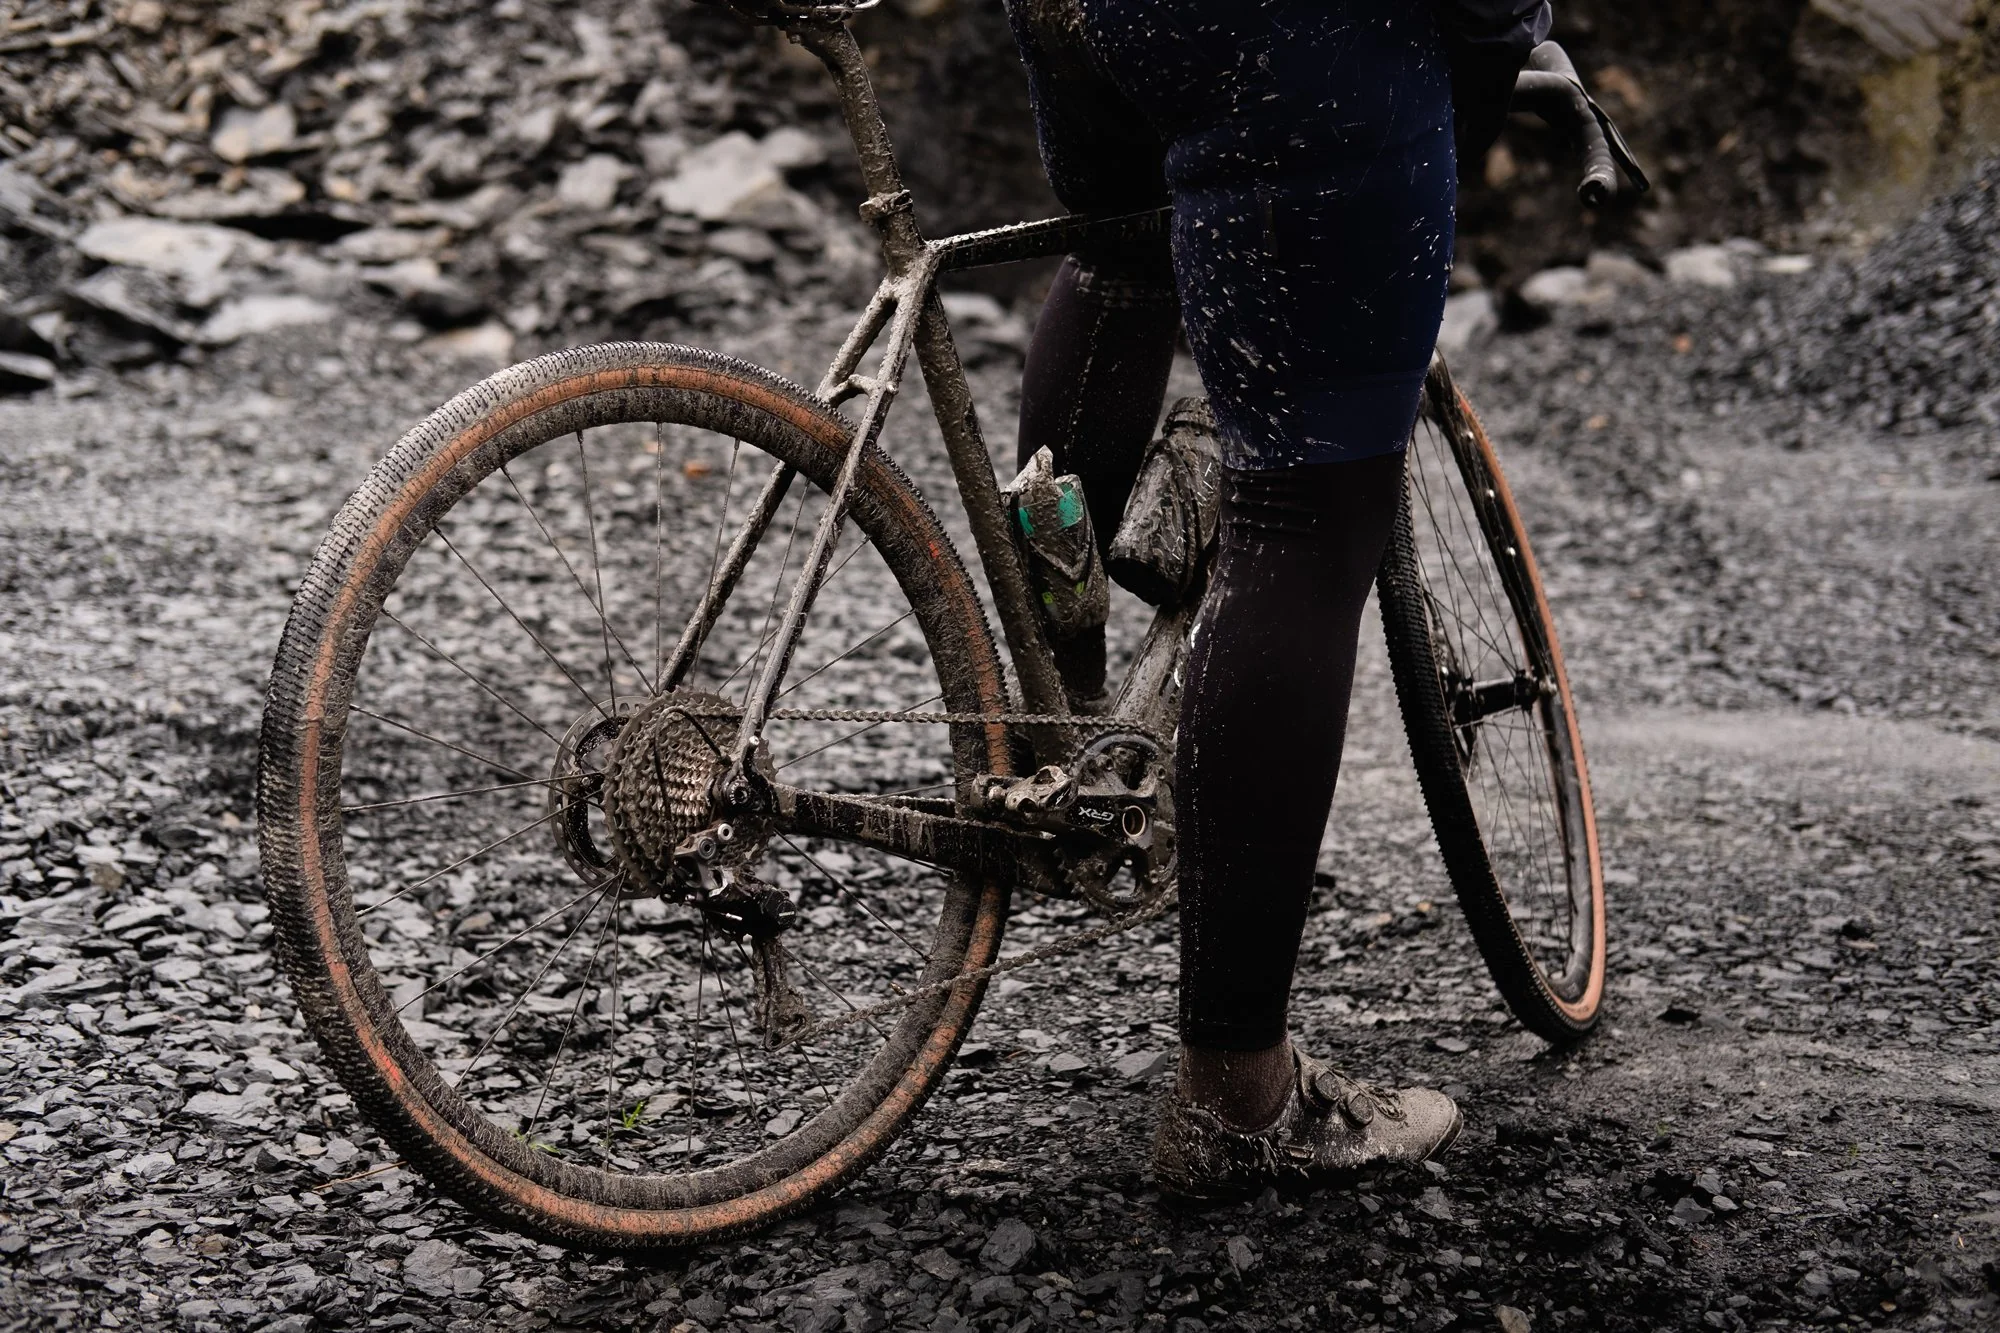 Width and Comfort in Gravel Bike Tires